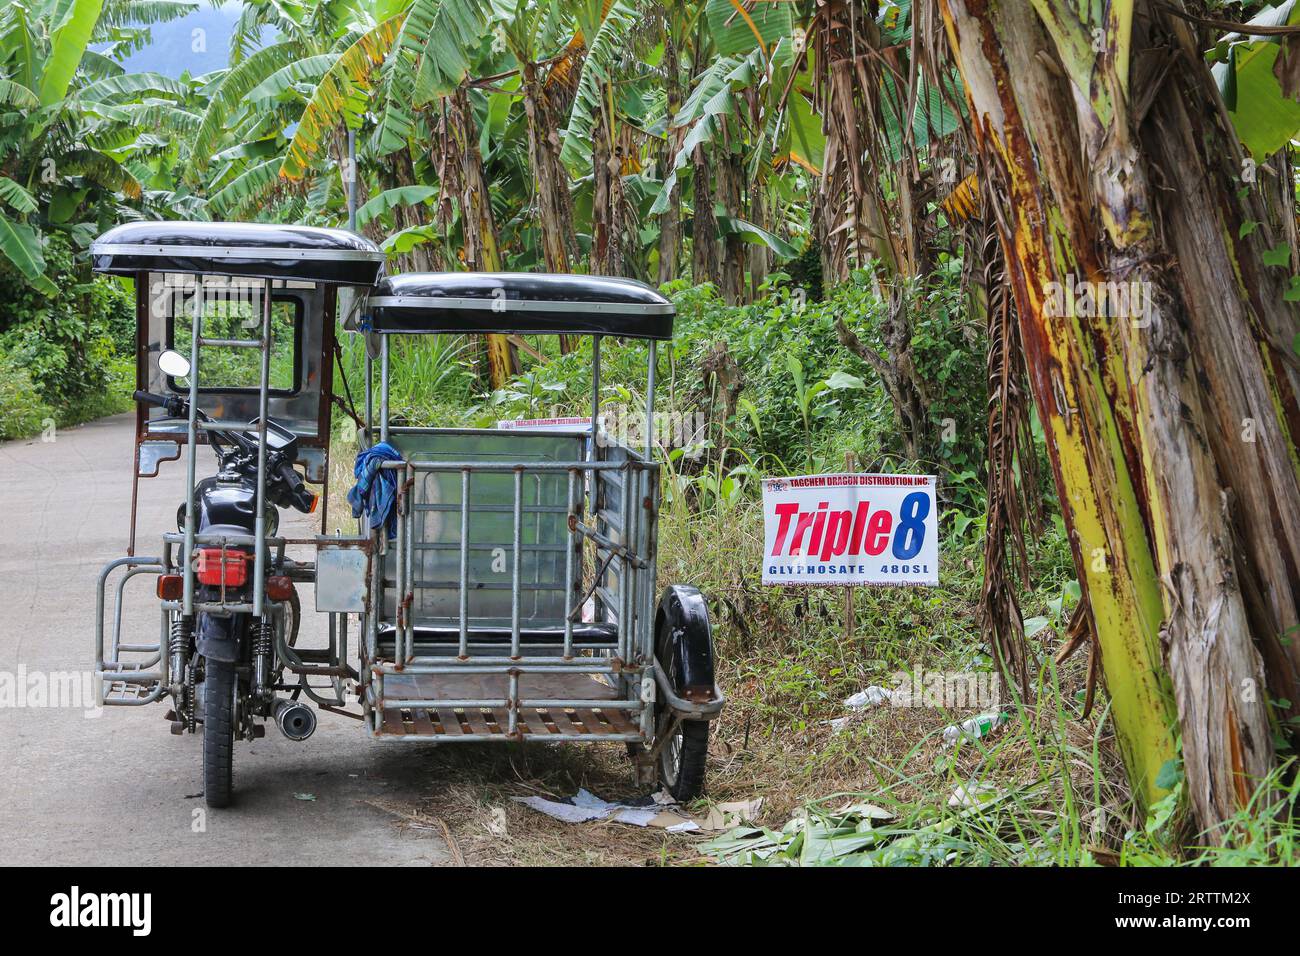 Panneau publicitaire pour herbicide glyphosate Triple 8 480SL (Tag Chem) utilisé dans la ferme de plantation de bananes voisine, tricycle sidecar boxtype, Philippines Banque D'Images